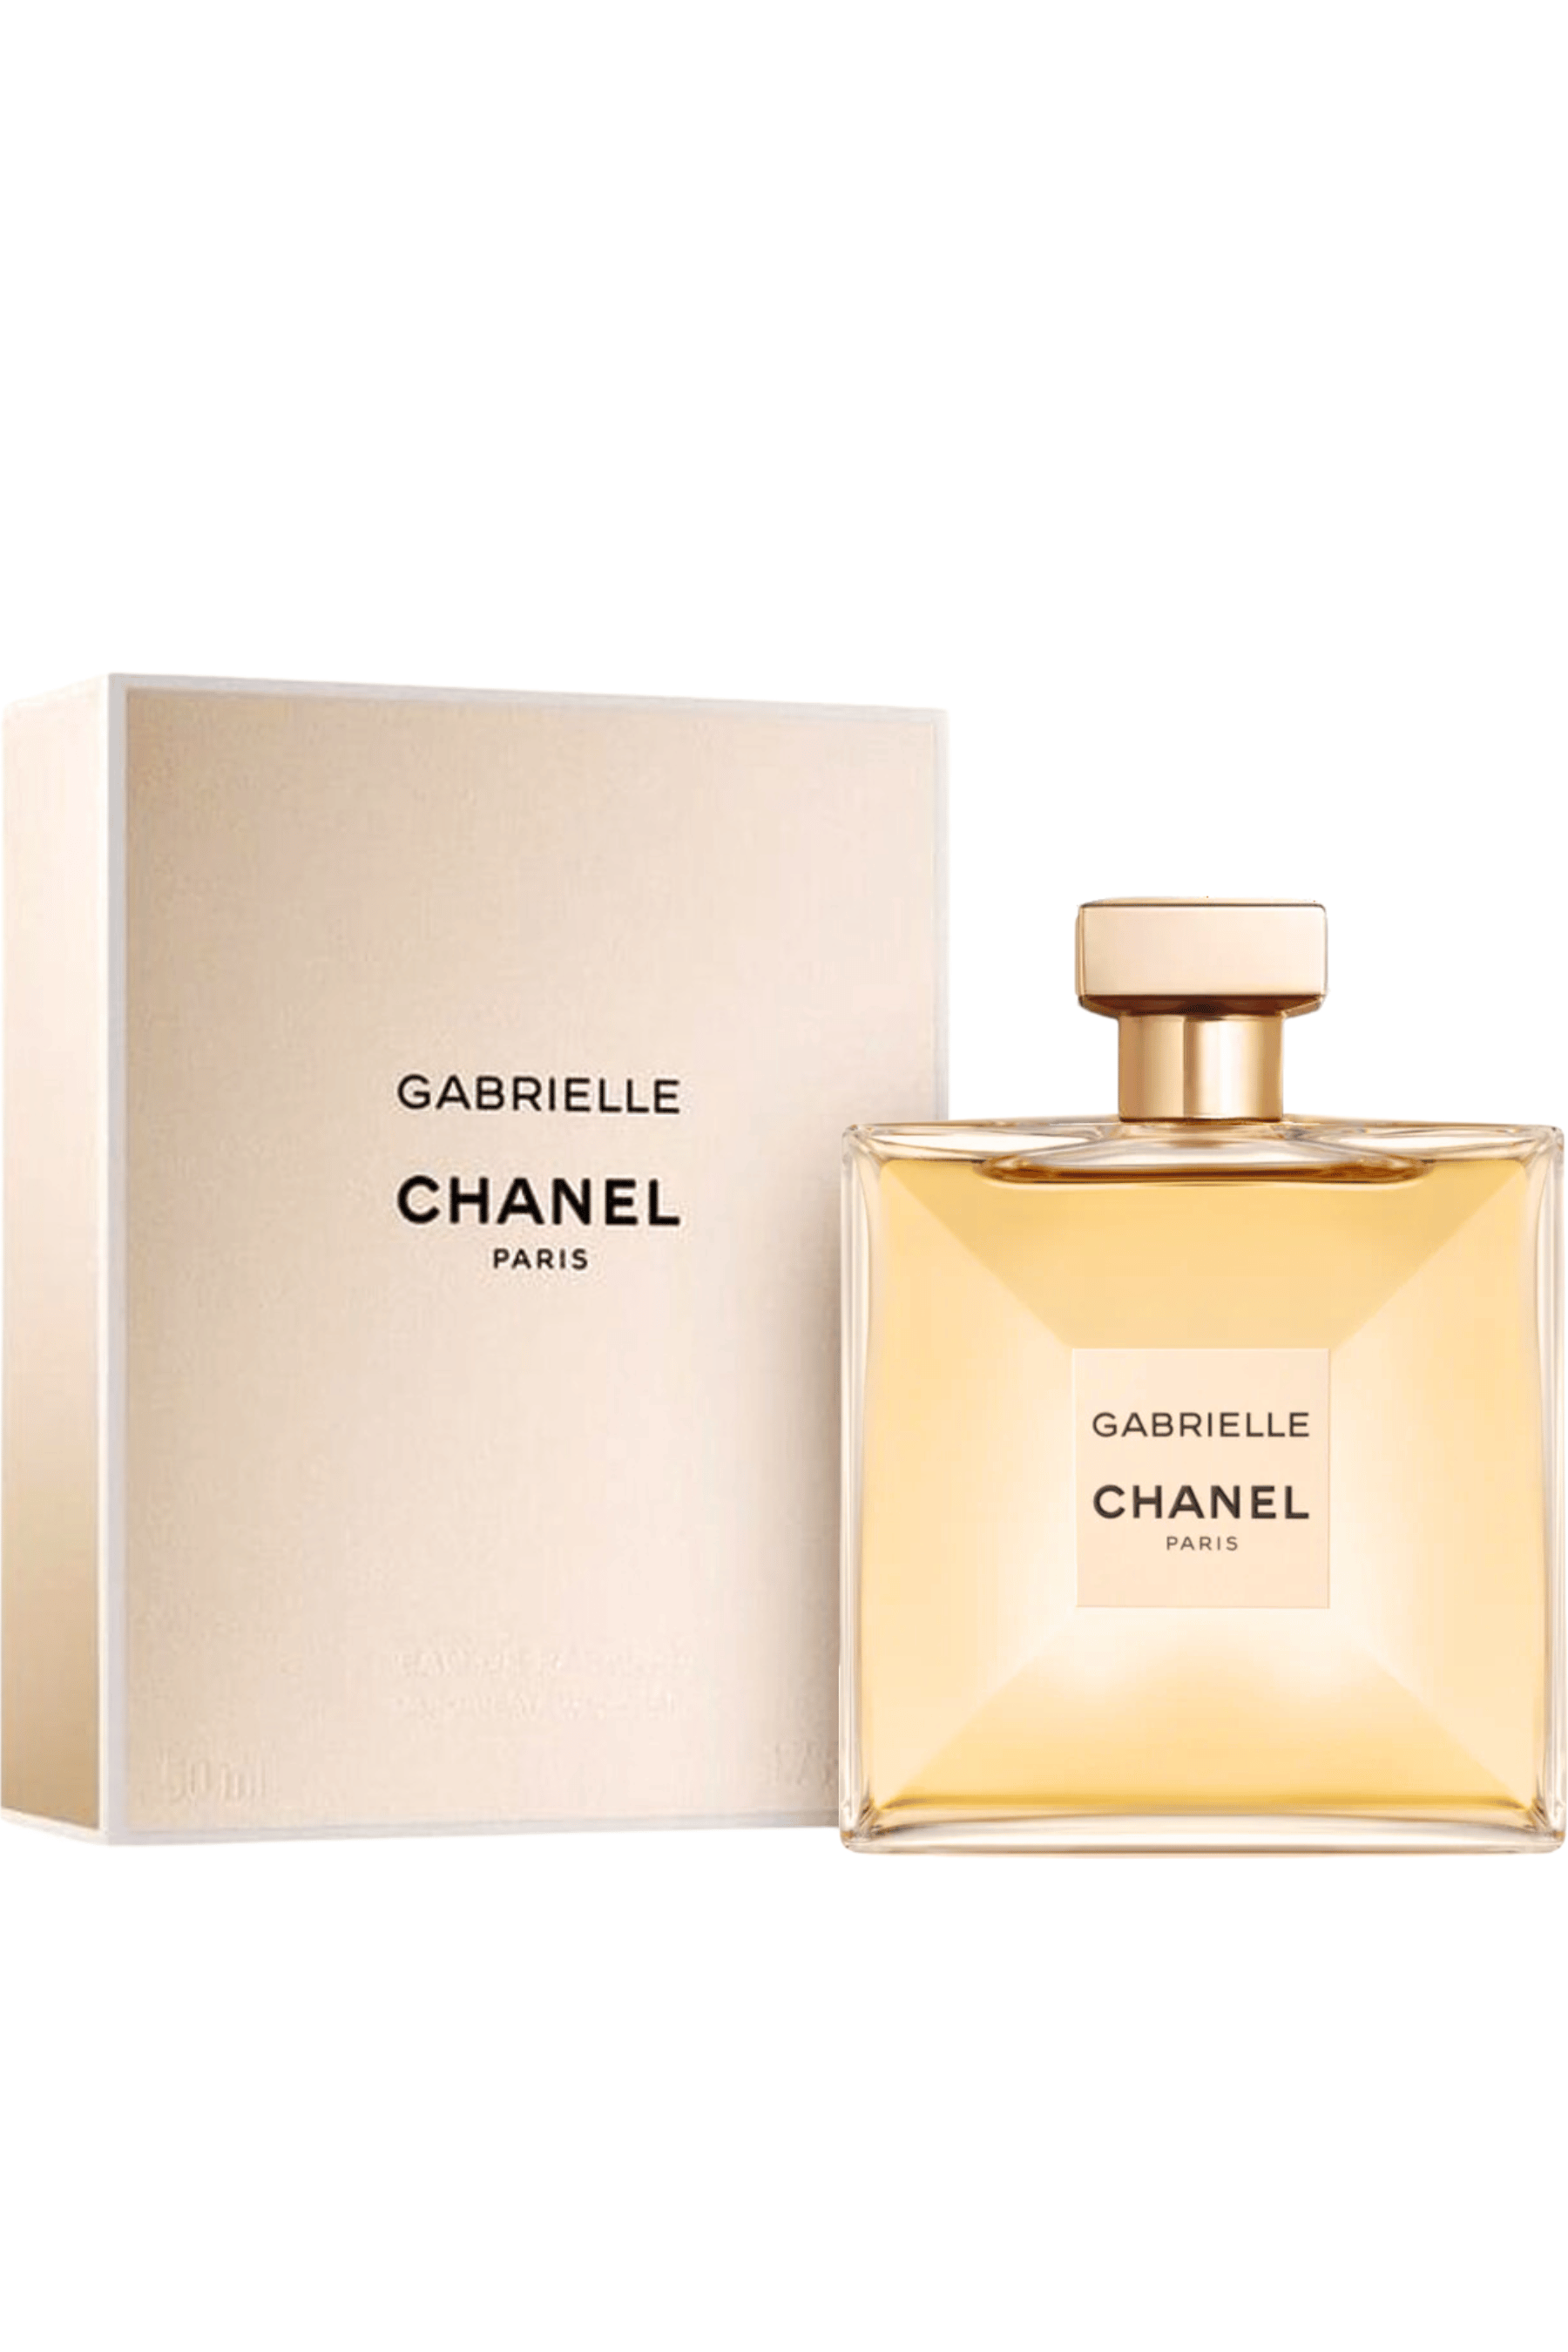 Perfume Gabrielle Eau de Parfum Chanel 100ml - Feminino - Lams